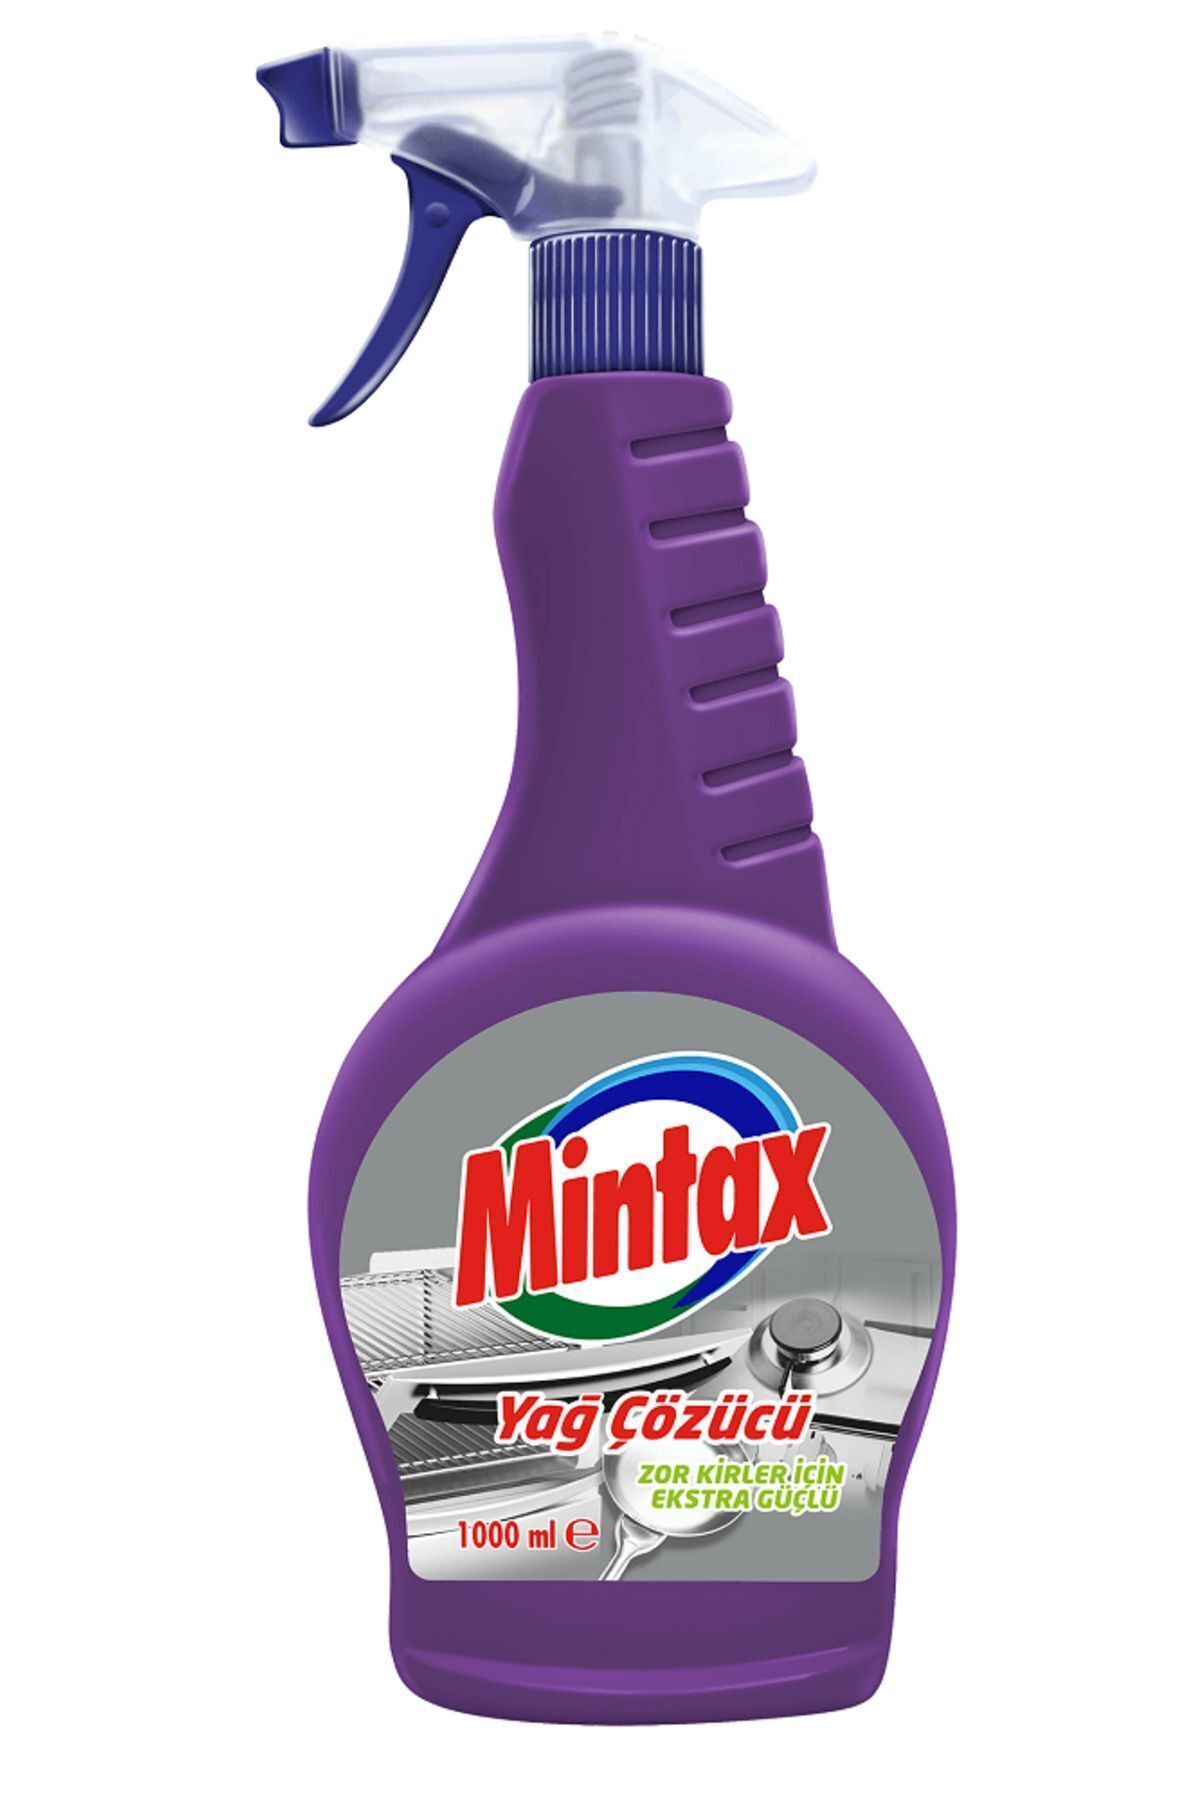 Mintax Yağ Çözücü 1000 ml